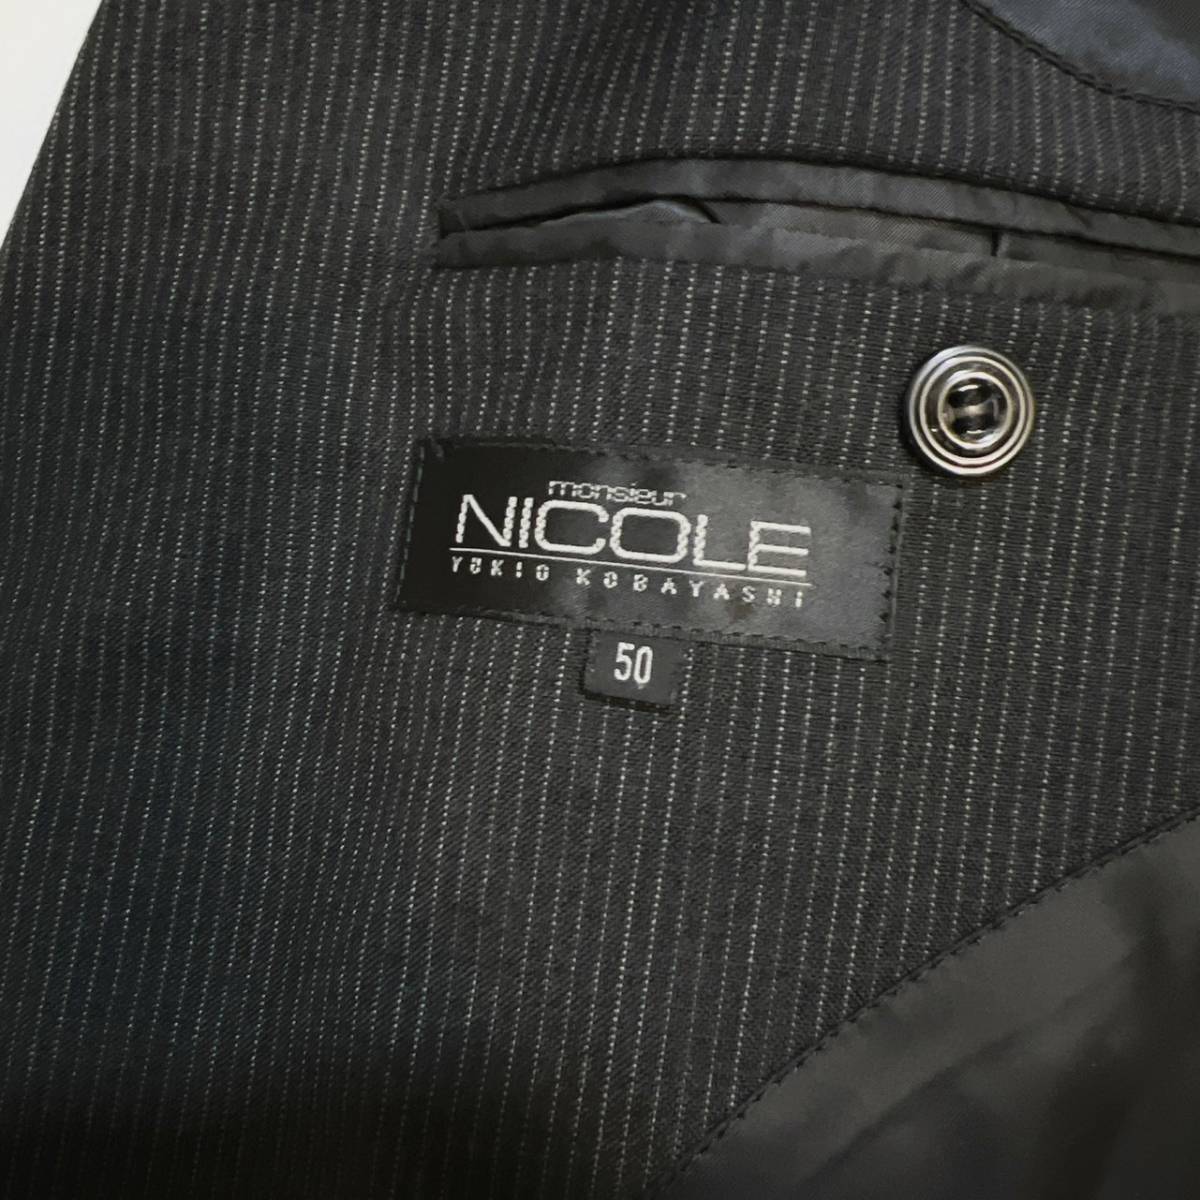 希少XL! ニコル 【溢れる高級感】 NICOLE ムッシュニコル スーツ セットアップ ストライプ ウール 黒 ブラック 背抜き 2B 50 大きいサイズ _画像7